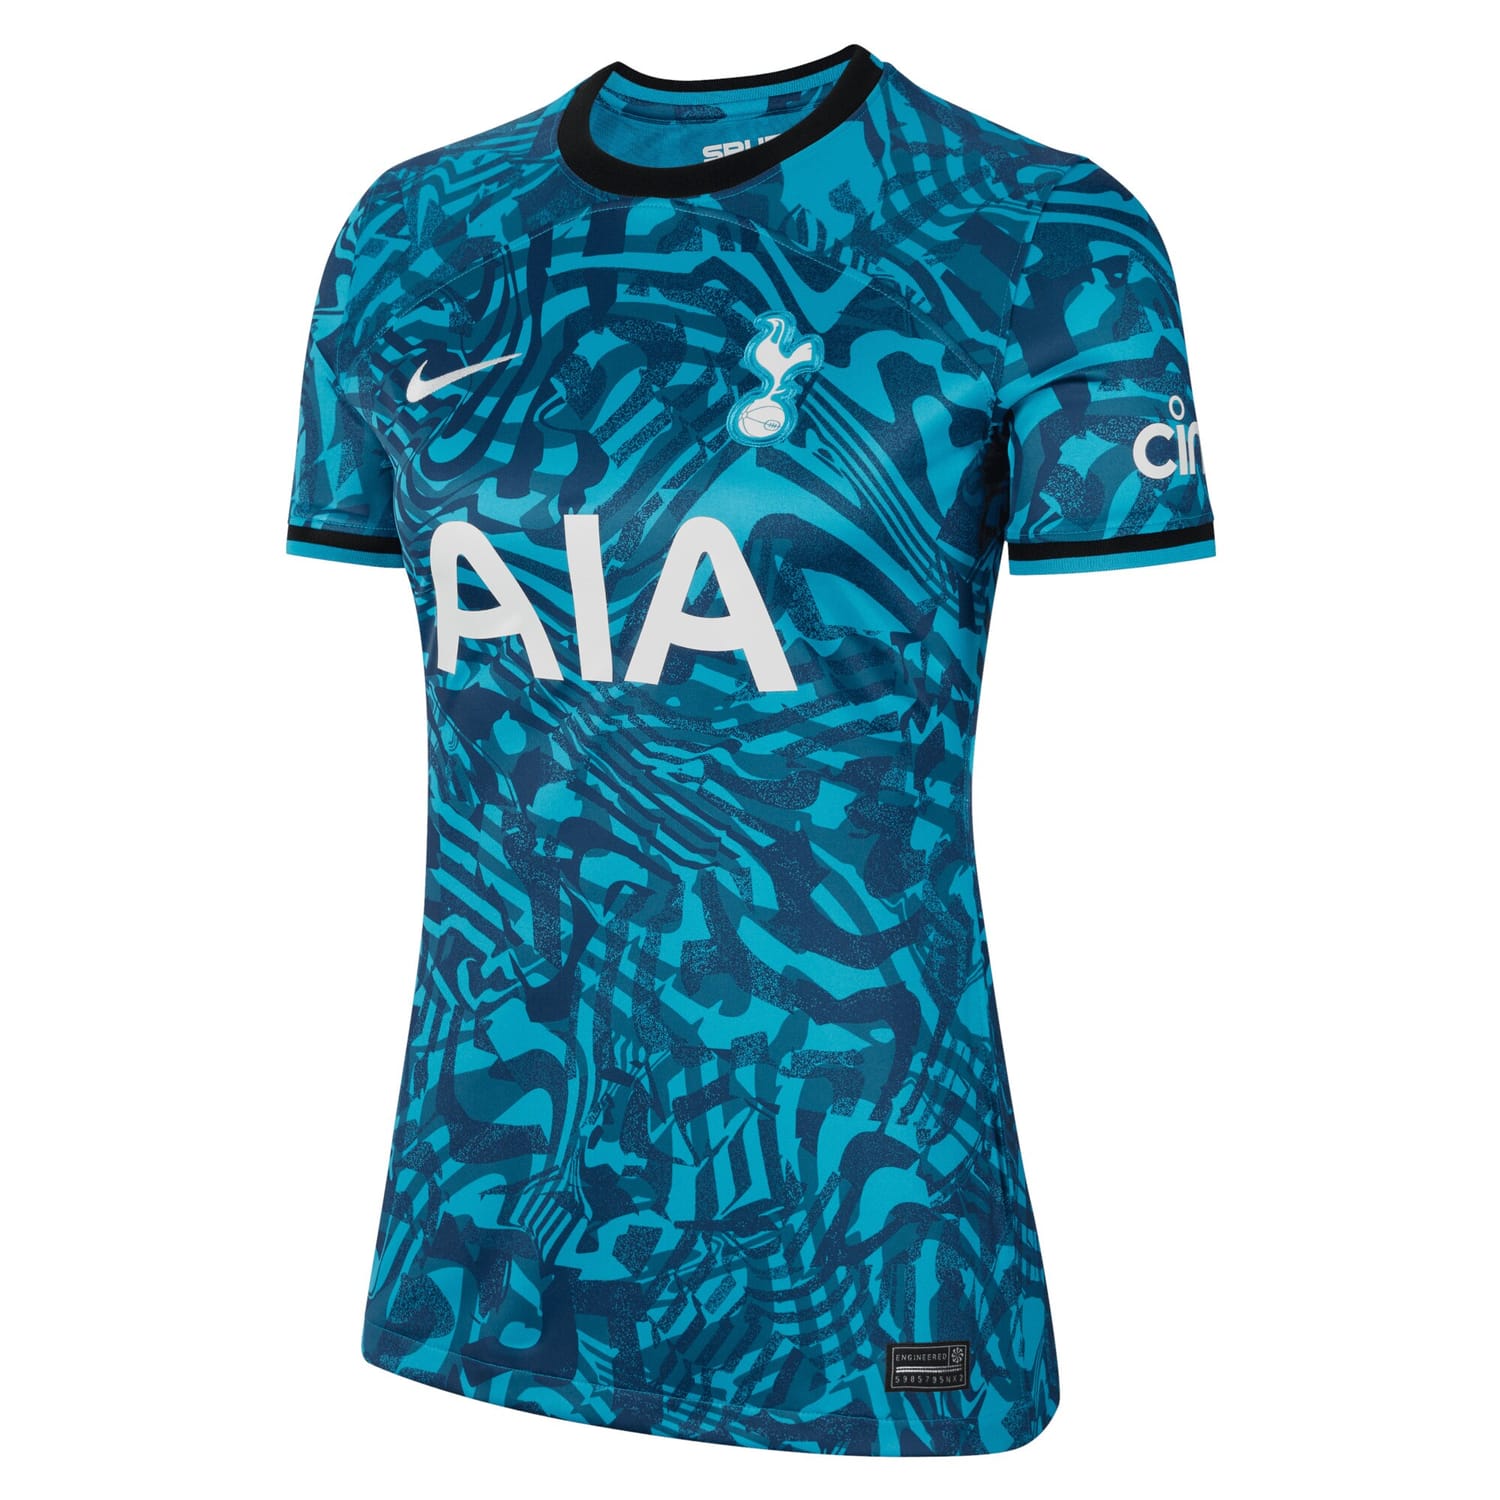 Premier League Tottenham Hotspur Third Jersey Shirt 2022-23 player Lucas Hernandez 27 printing for Women